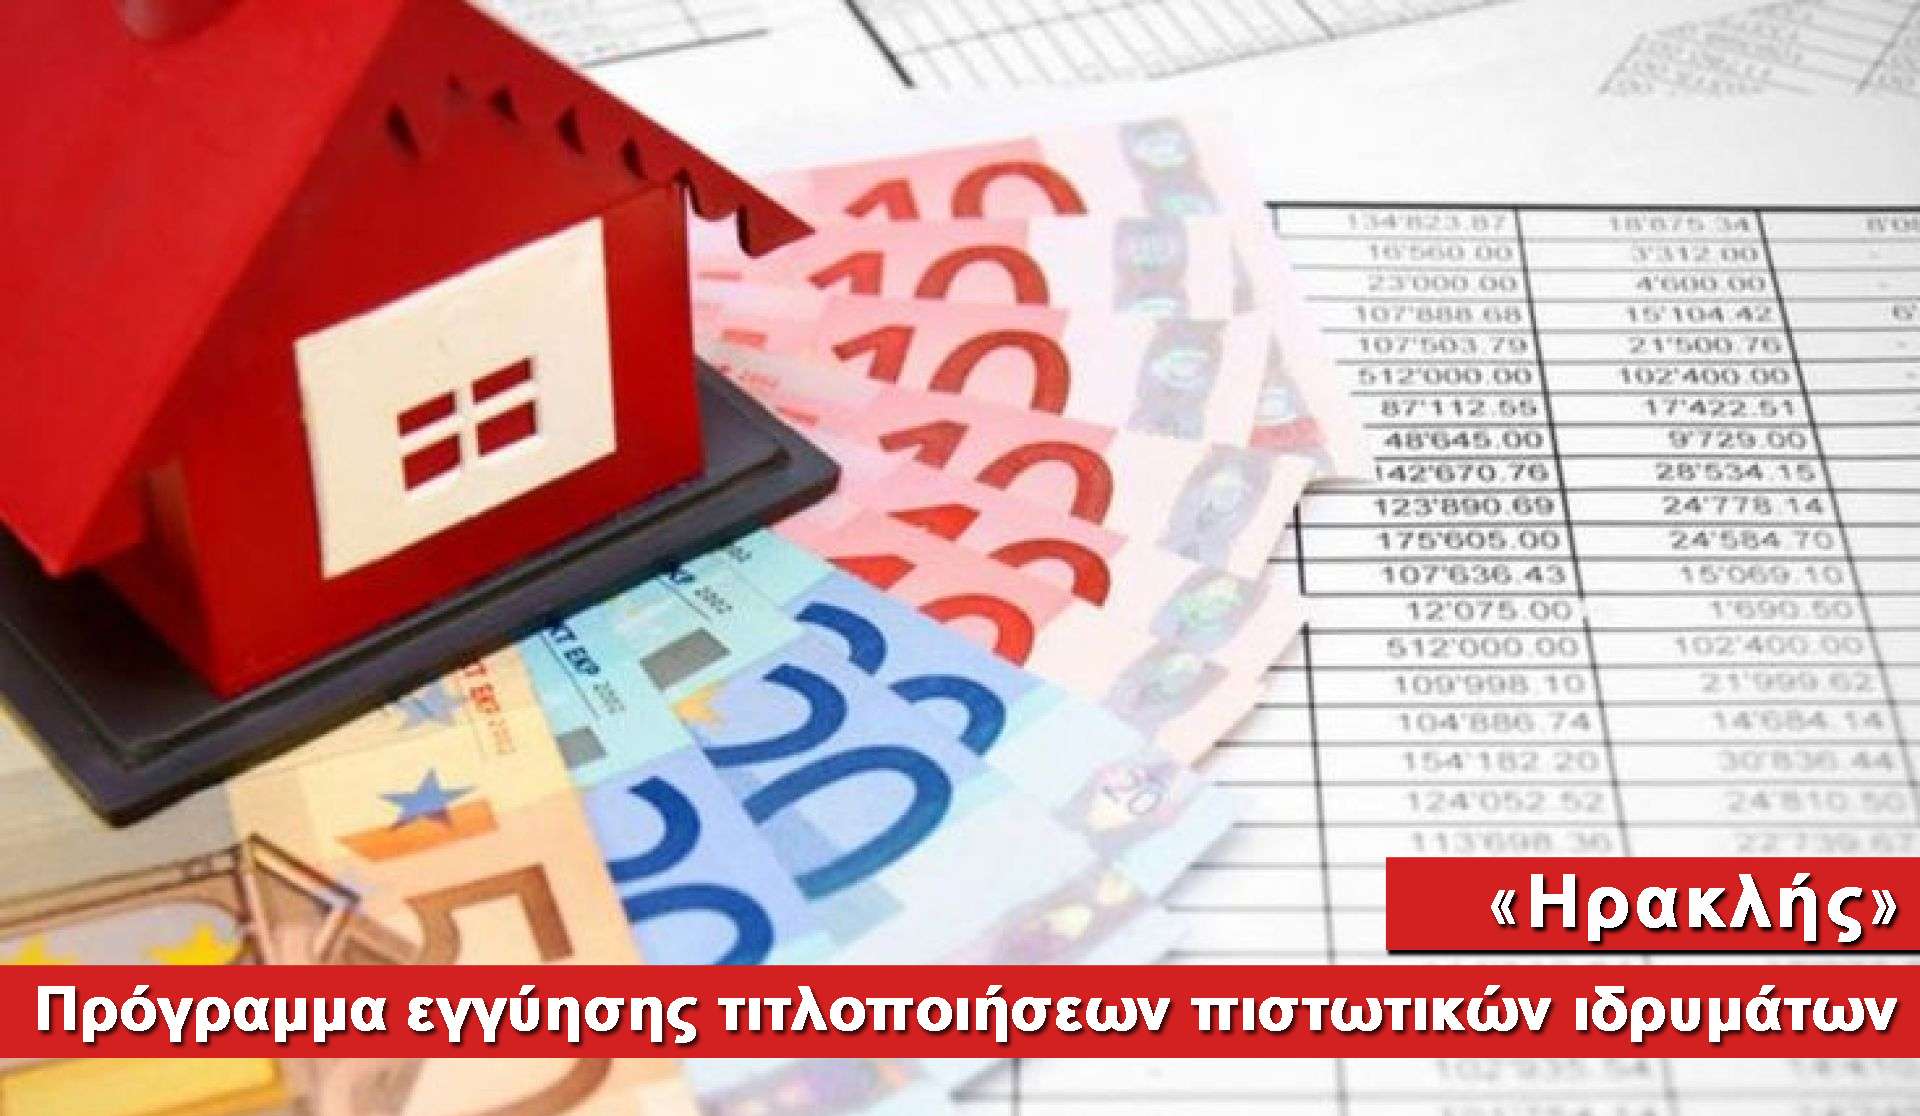 Πρόγραμμα παροχής εγγύησης σε τιτλοποιήσεις πιστωτικών ιδρυμάτων «Ηρακλής»